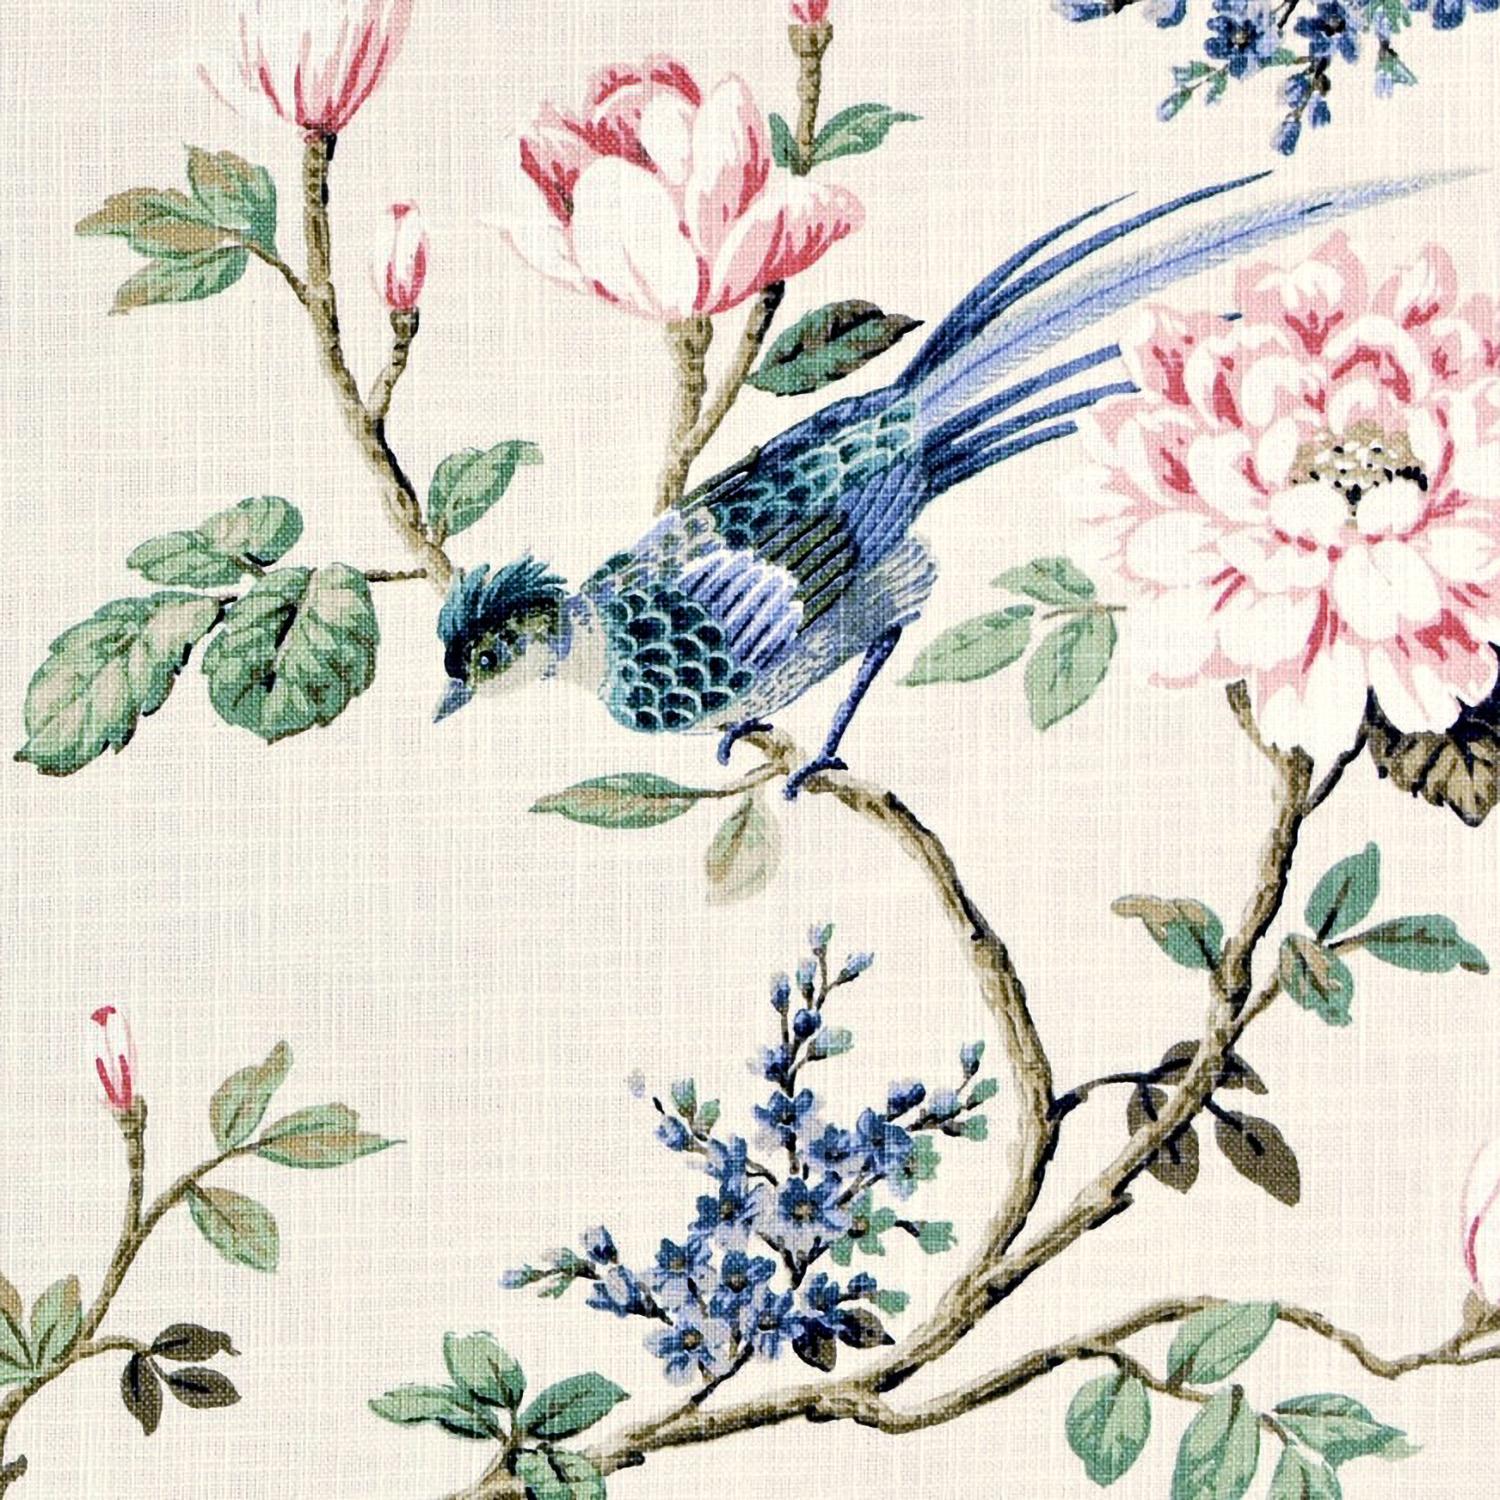 Hobird/Natural – Fabric